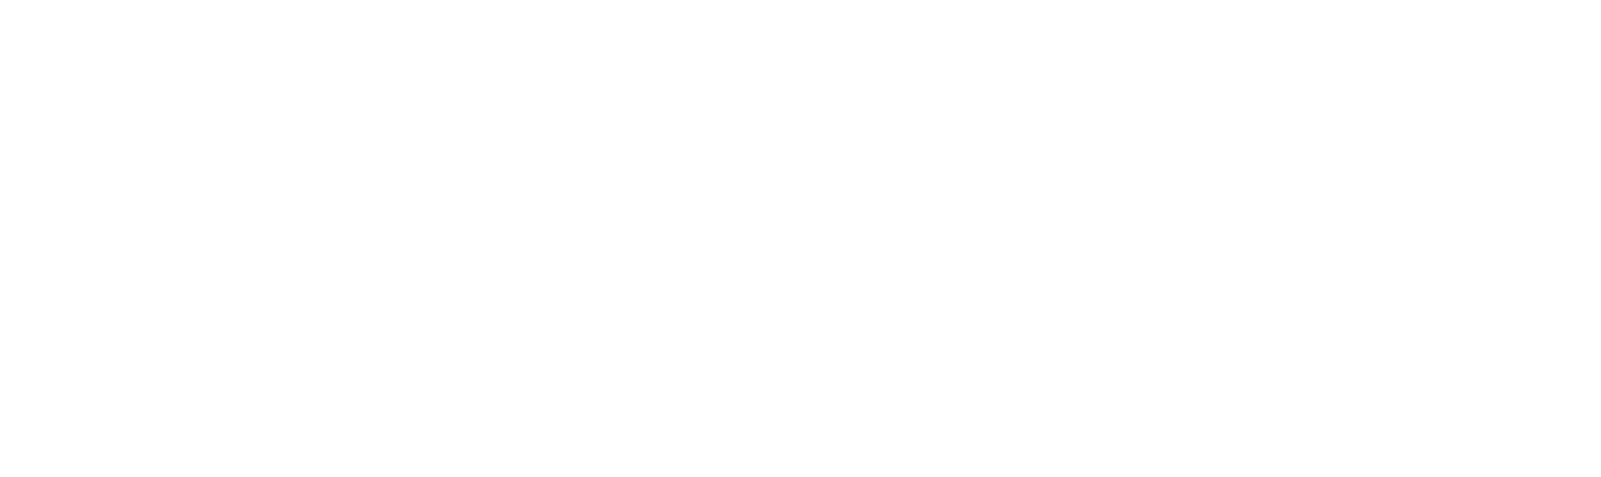 Britvic logo grand pour les fonds sombres (PNG transparent)